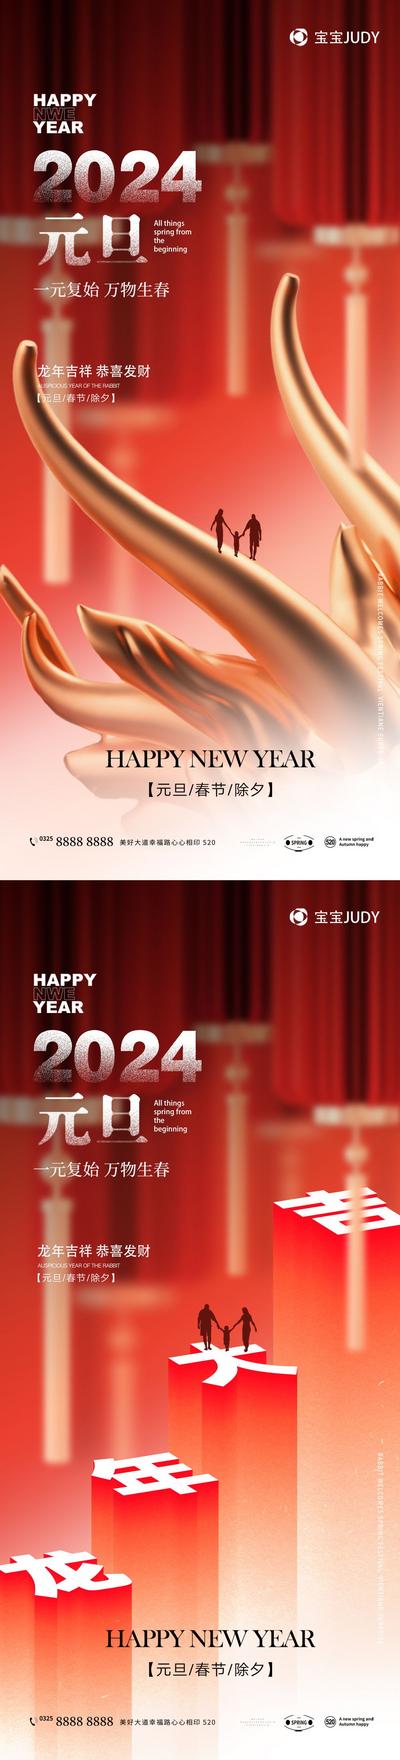 【南门网】广告 海报 节日 元旦 龙年 2024 大气 龙头 龙角 系列